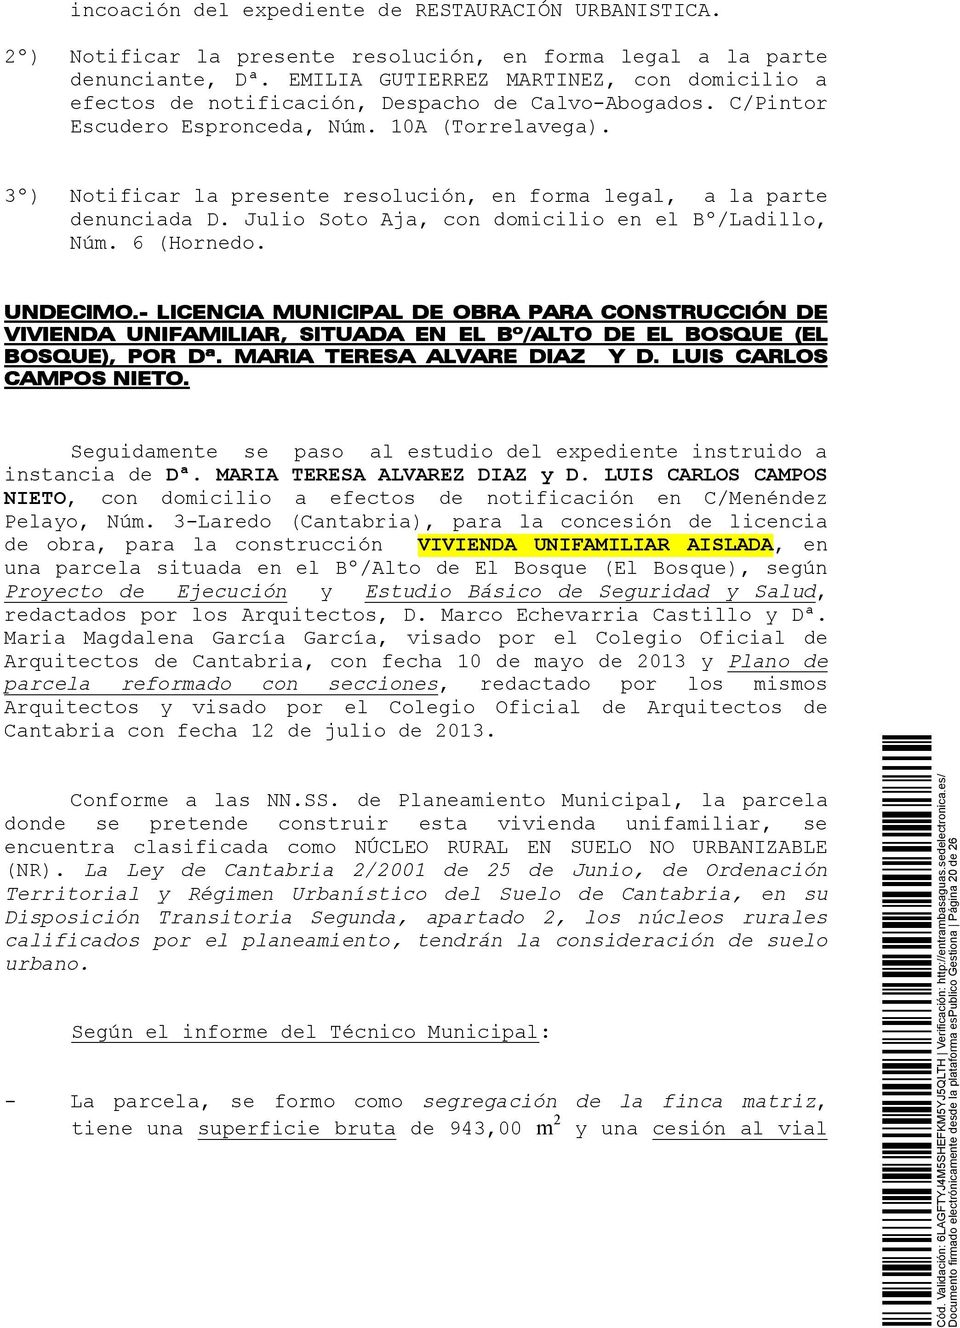 3º) Notificar la presente resolución, en forma legal, a la parte denunciada D. Julio Soto Aja, con domicilio en el Bº/Ladillo, Núm. 6 (Hornedo. UNDECIMO.